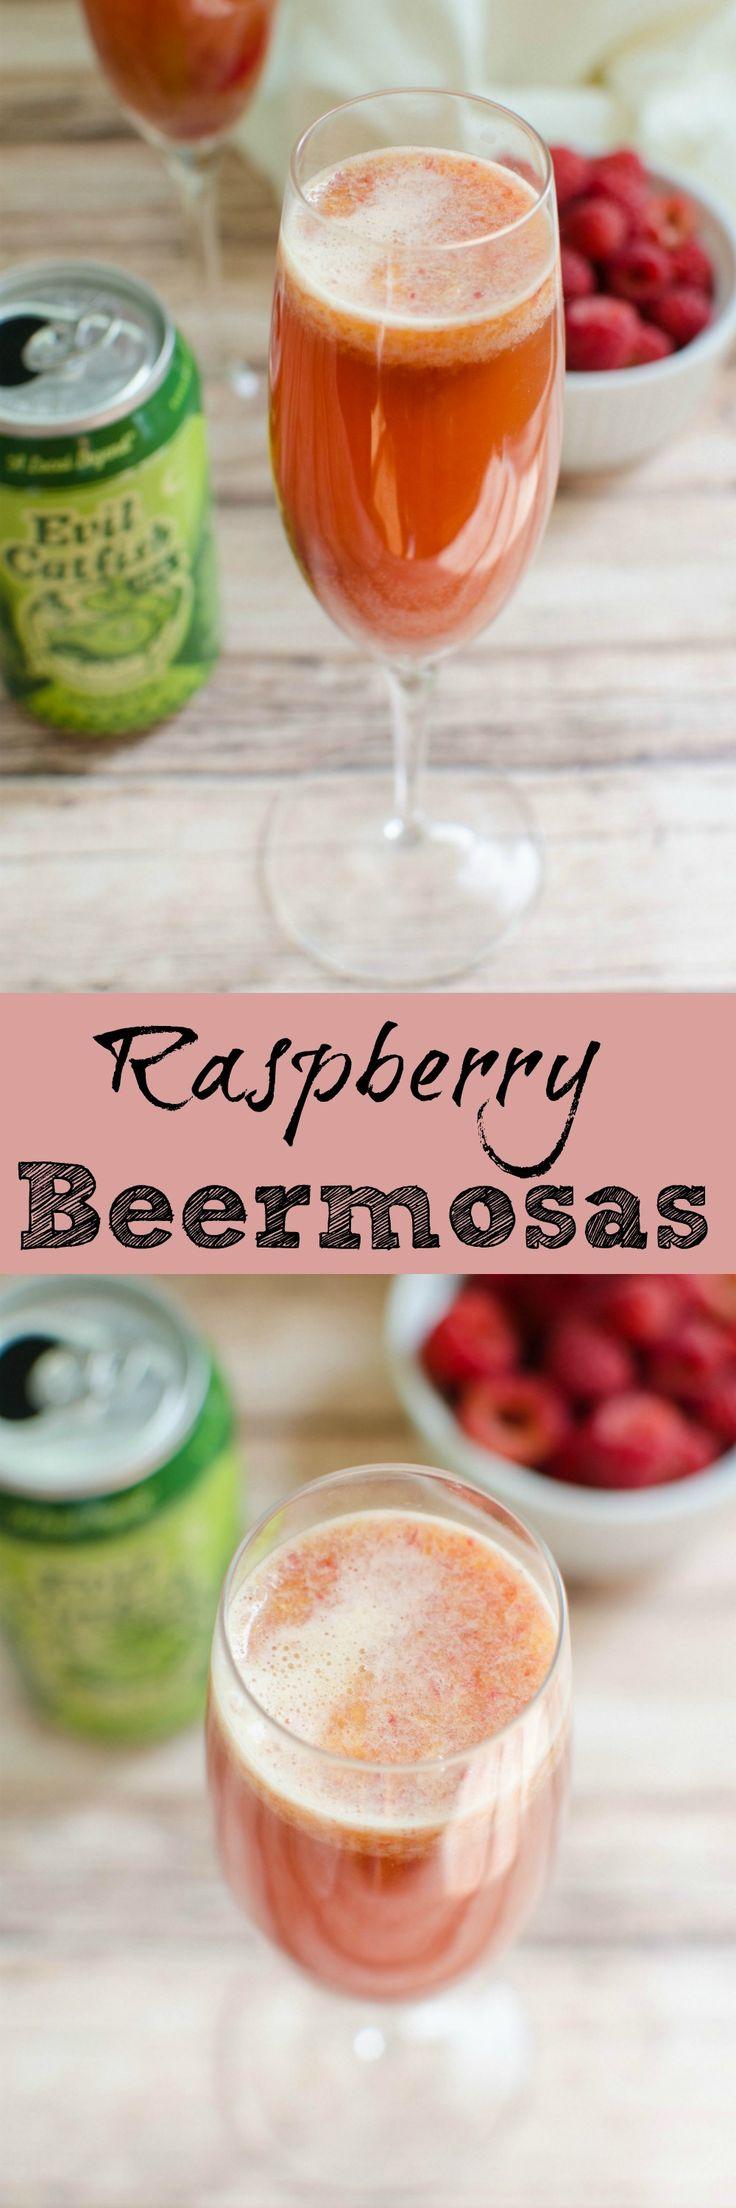 Wedding - Raspberry Beermosas